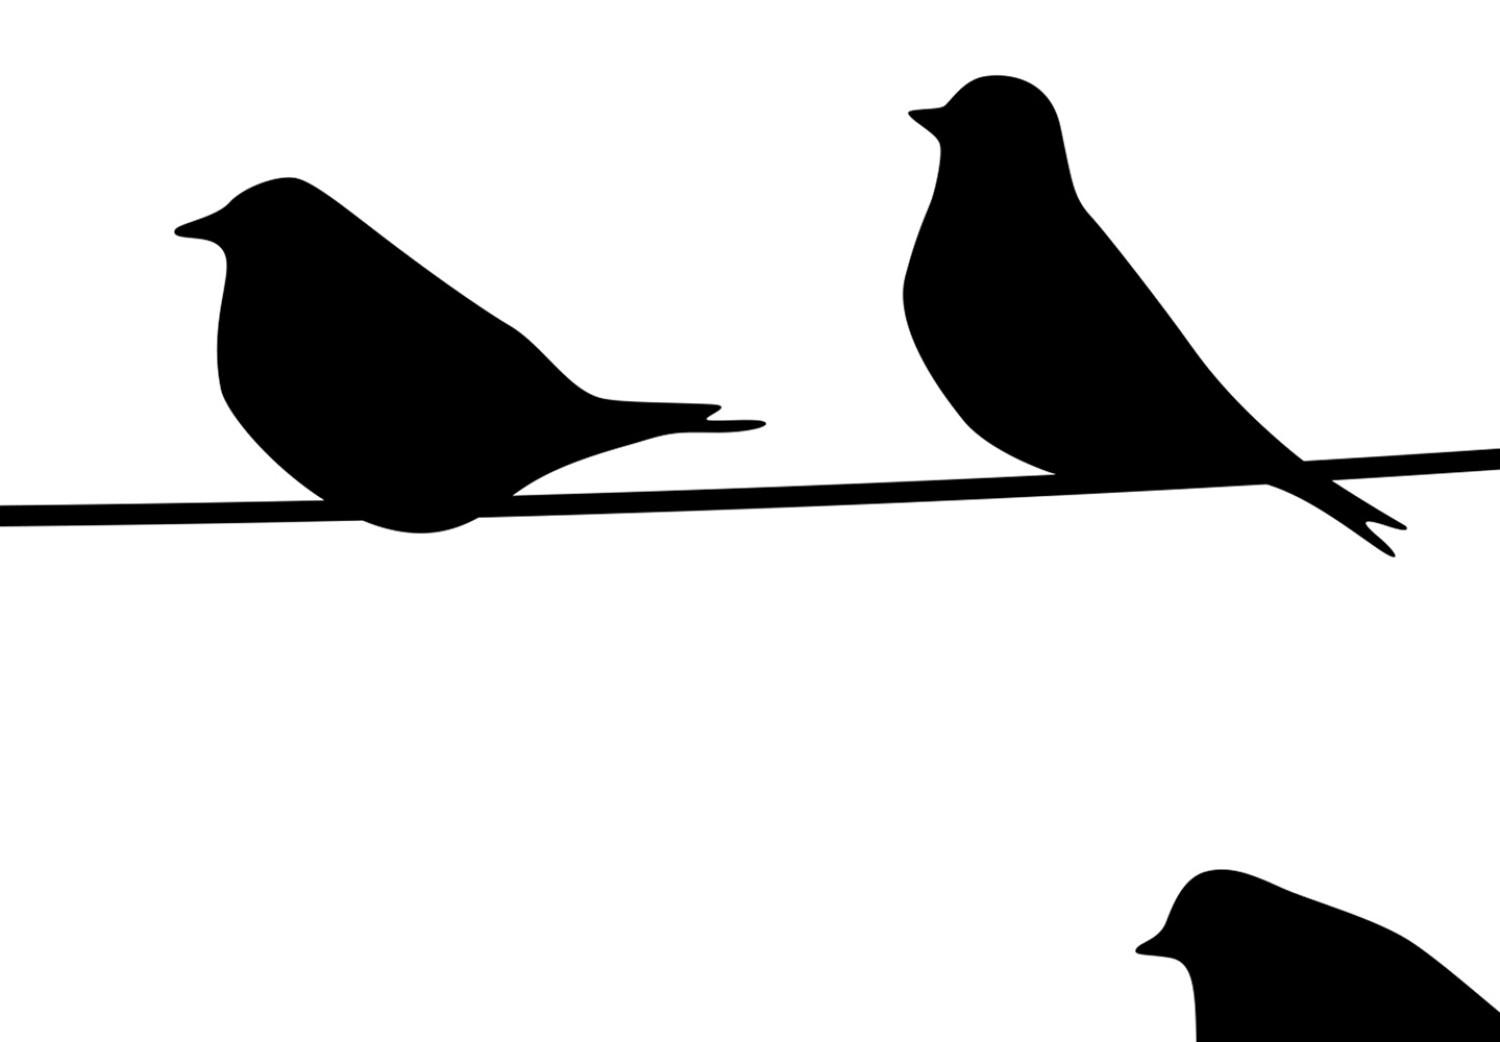 Cartel Familia de aves - aves en cable (Blanco y negro)